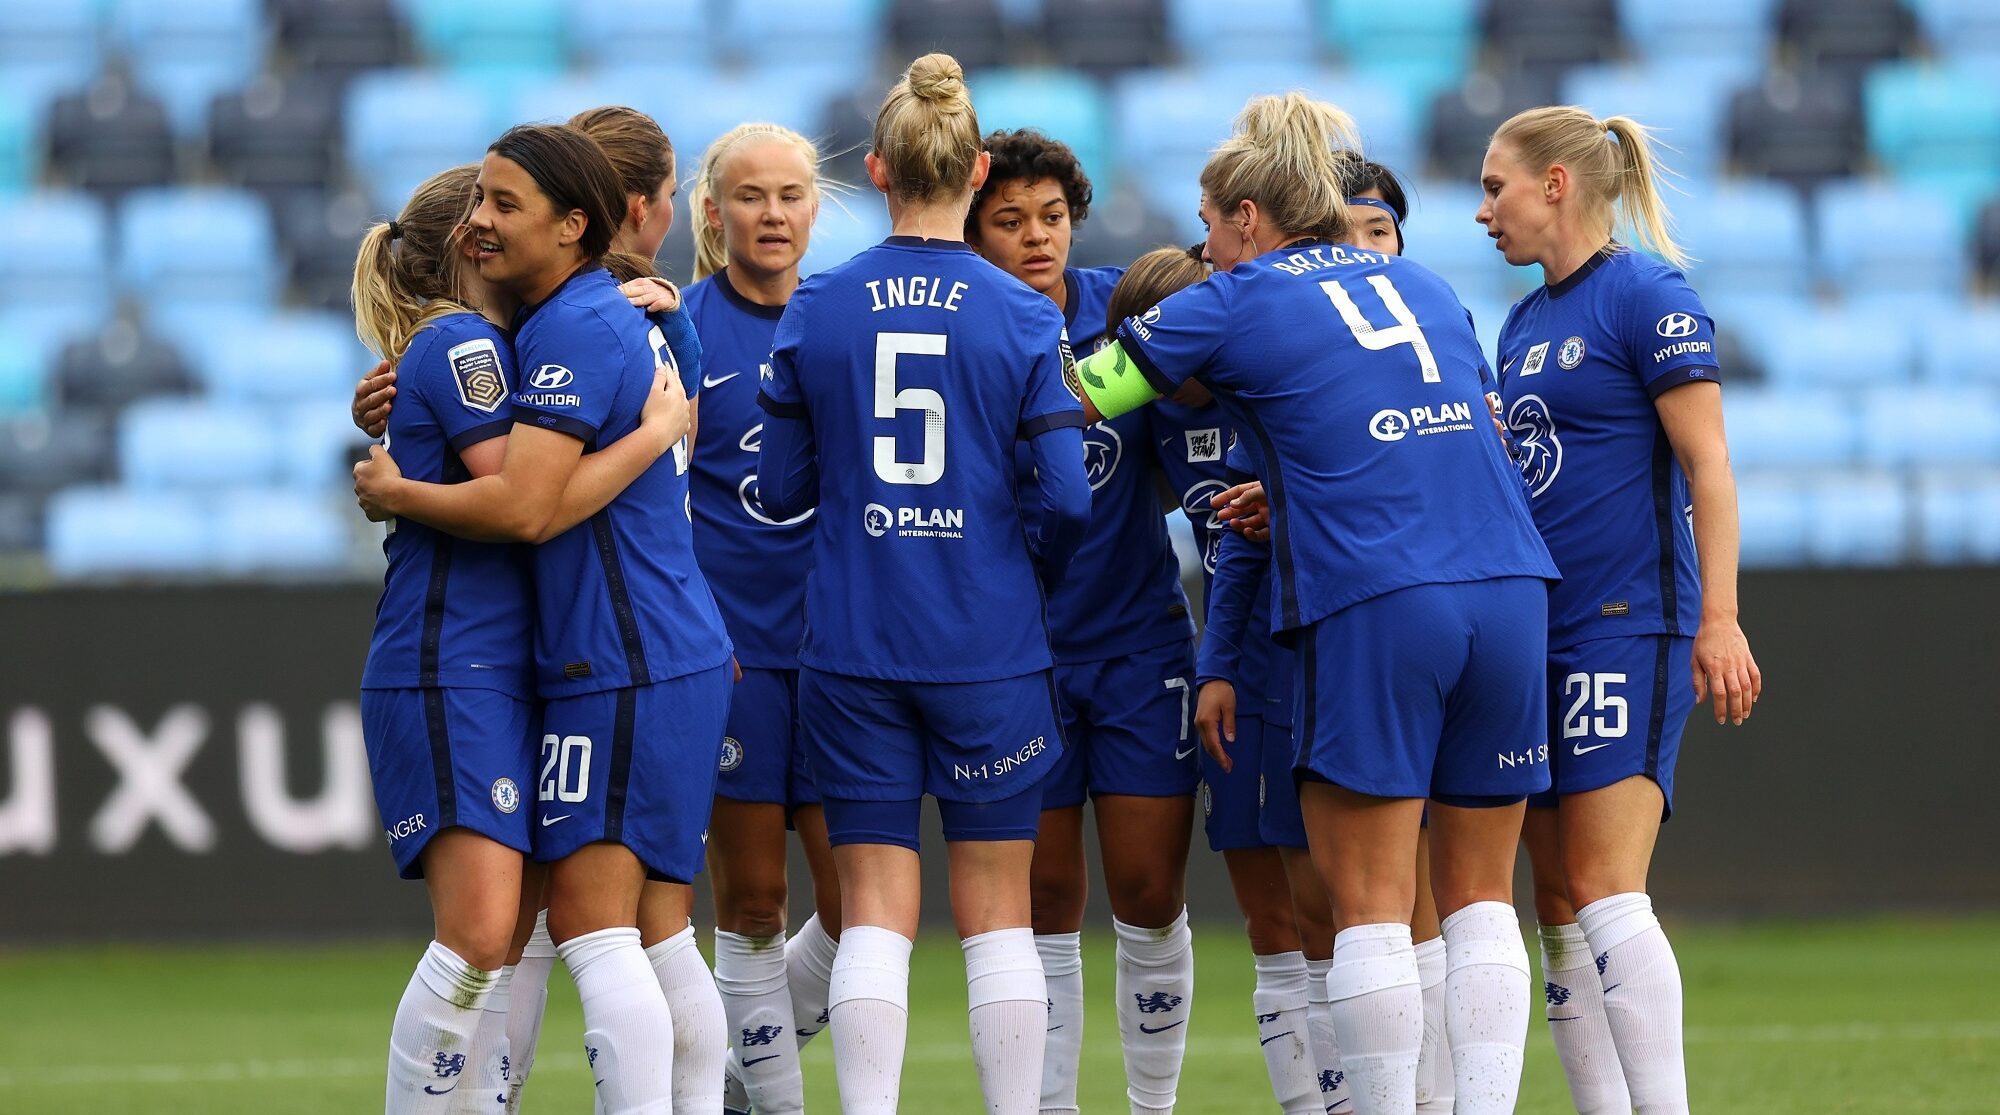 Por un boleto a Suecia: Comienzan las semifinales de la Women’s Champions League